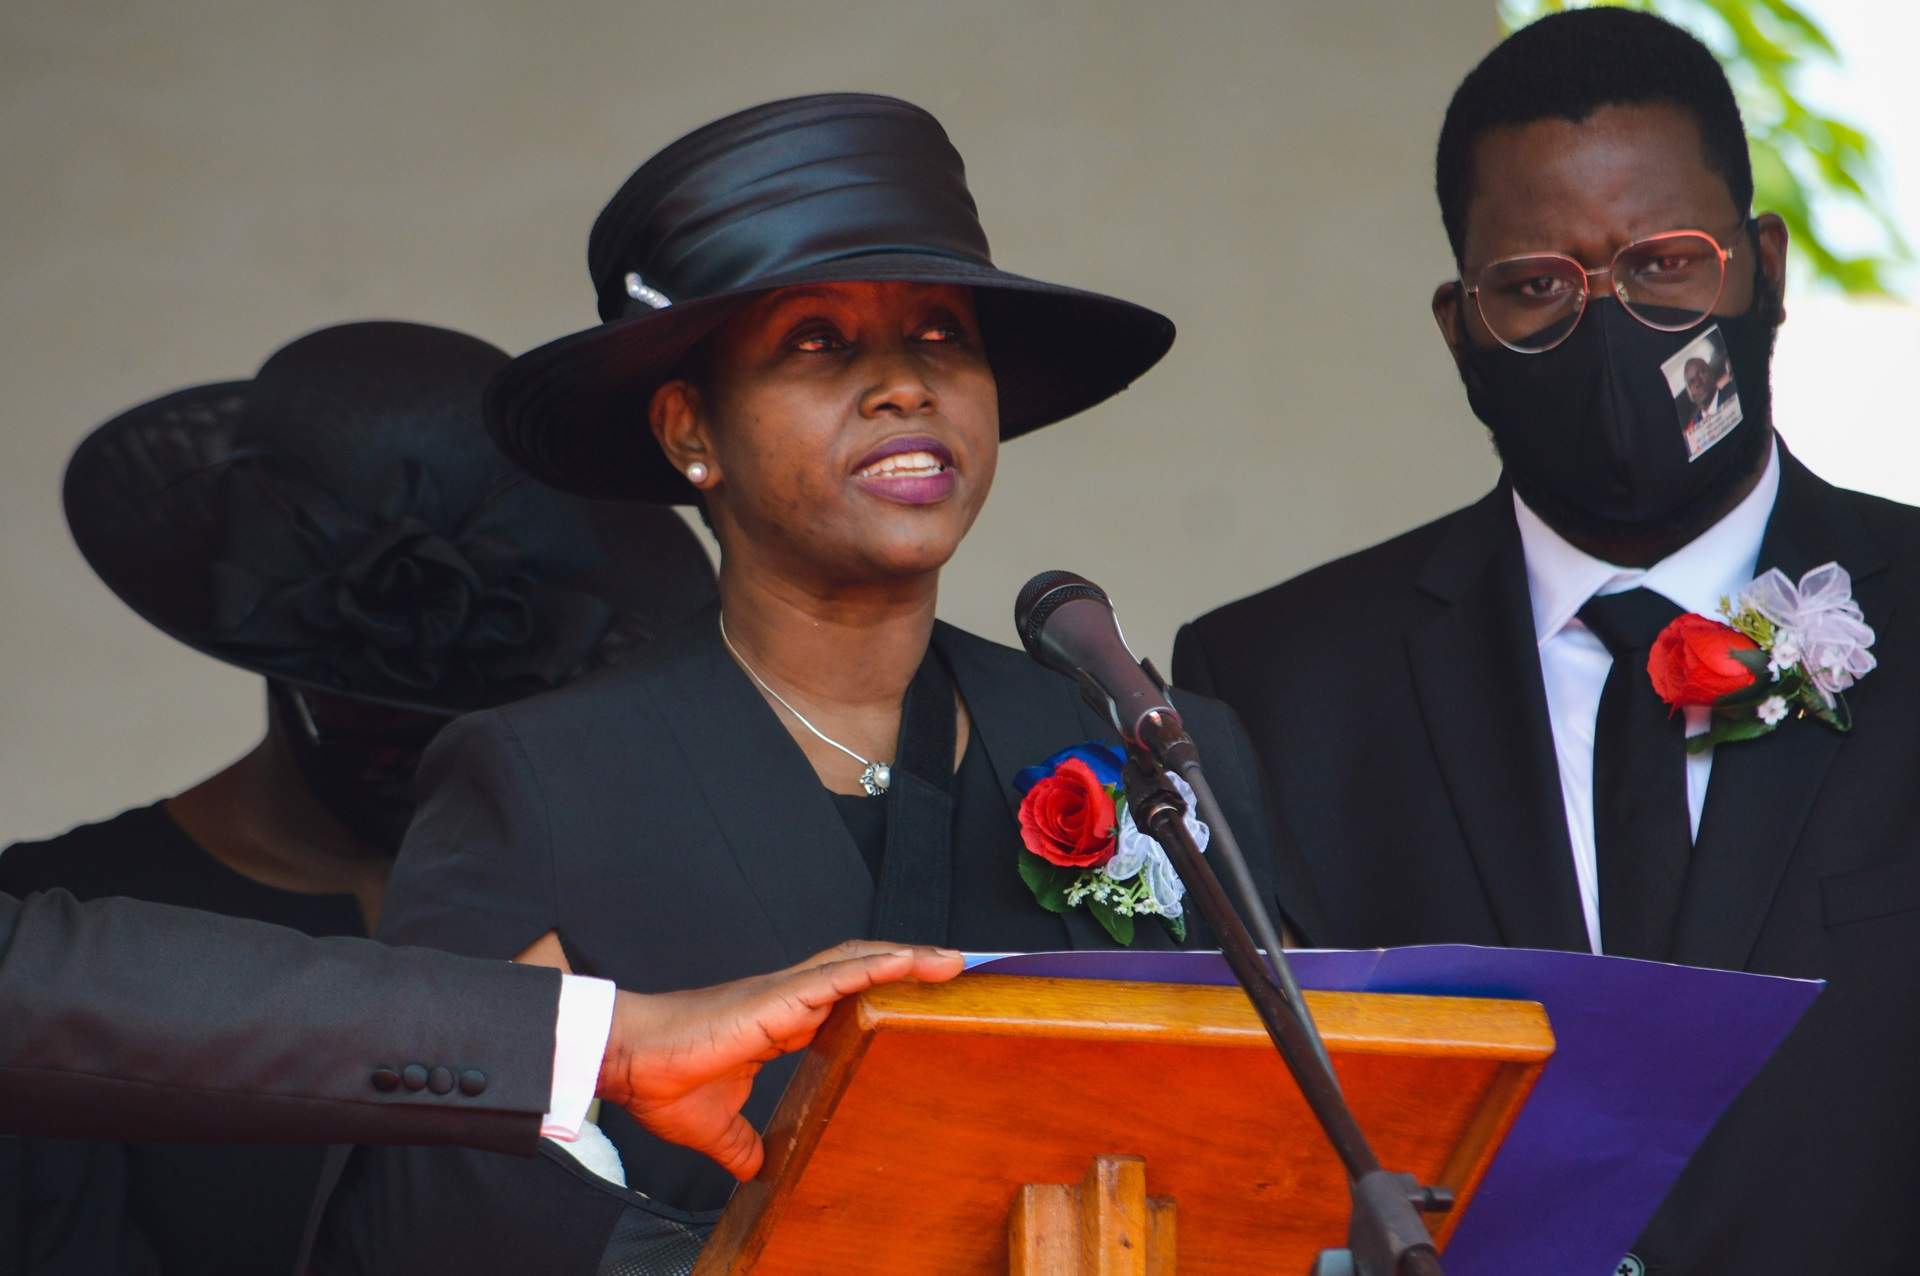 La viuda del expresidente de Haití asesinado, acusada de complicidad en el crimen